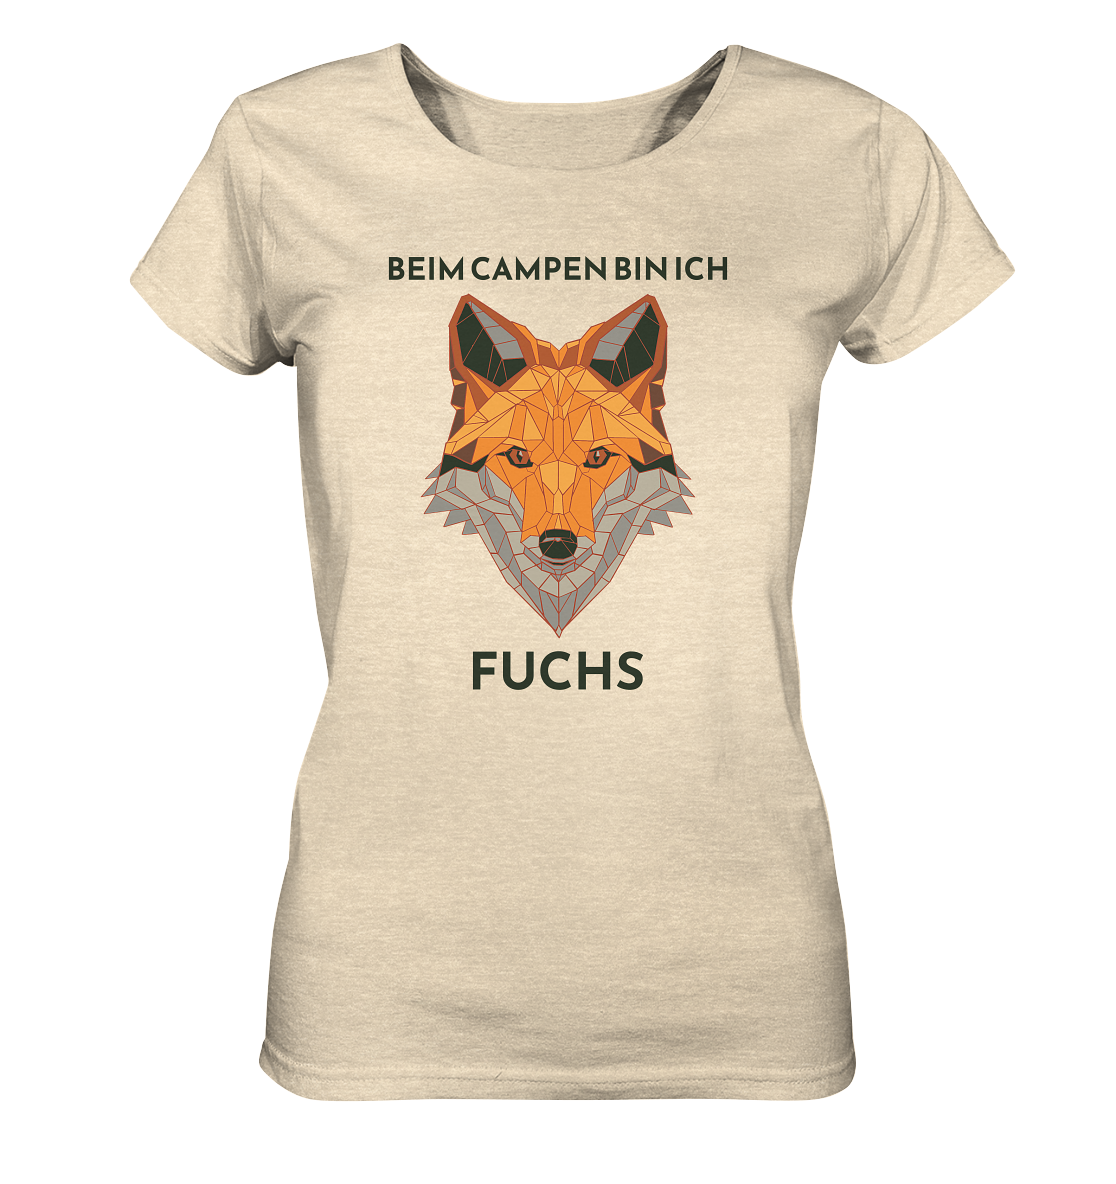 Beim Campen bin ich Fuchs - Ladies Organic Shirt